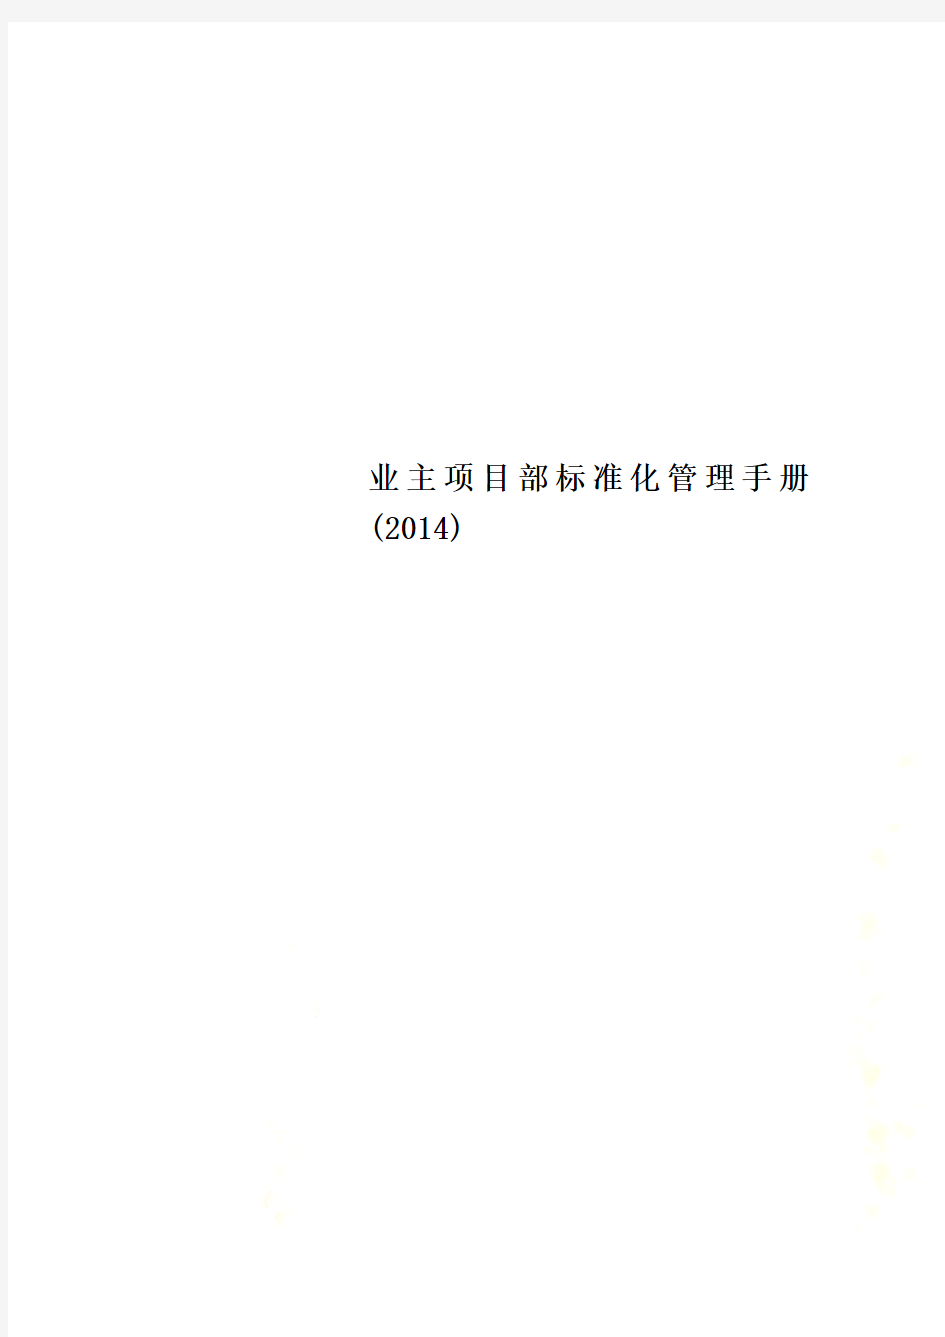 业主项目部标准化管理手册(2014)